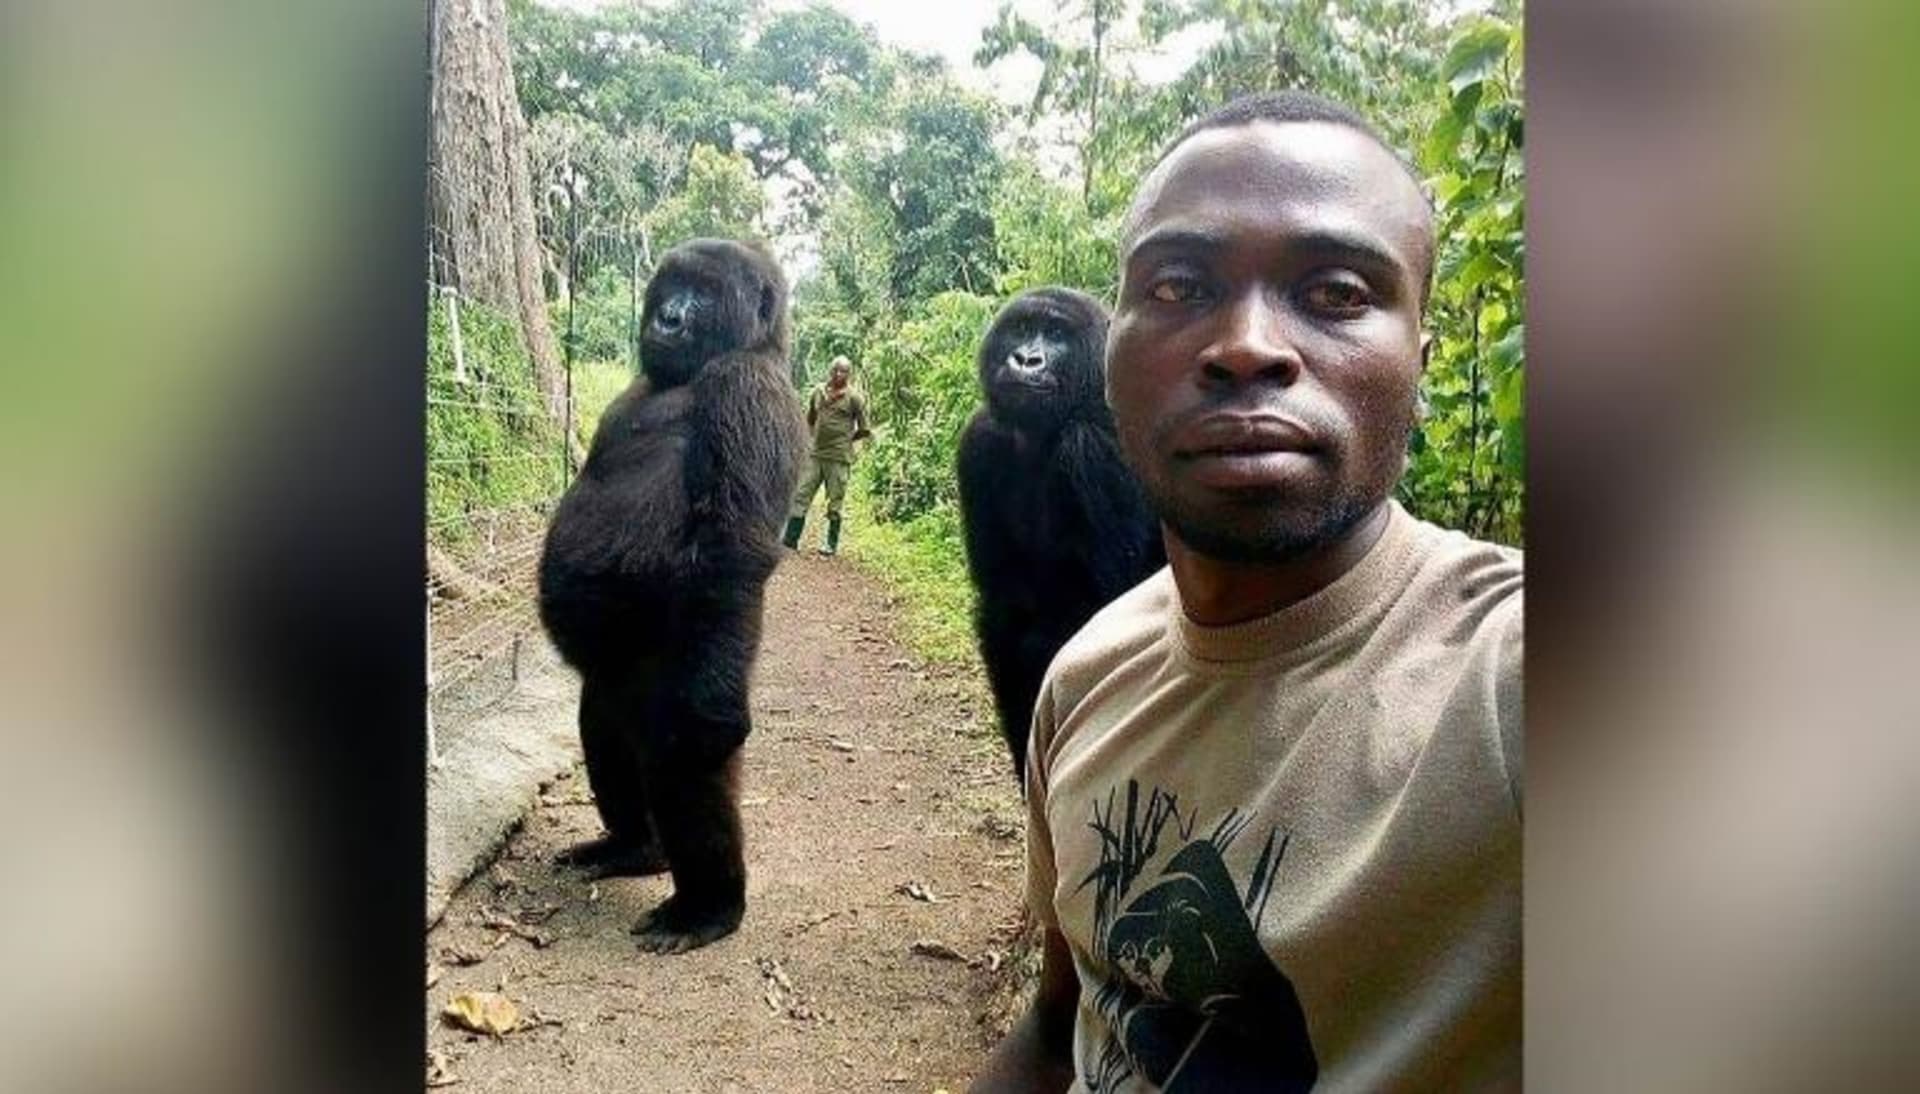 Fotka, která proslavila gorilu Ndakasi (Národní park Virunga).